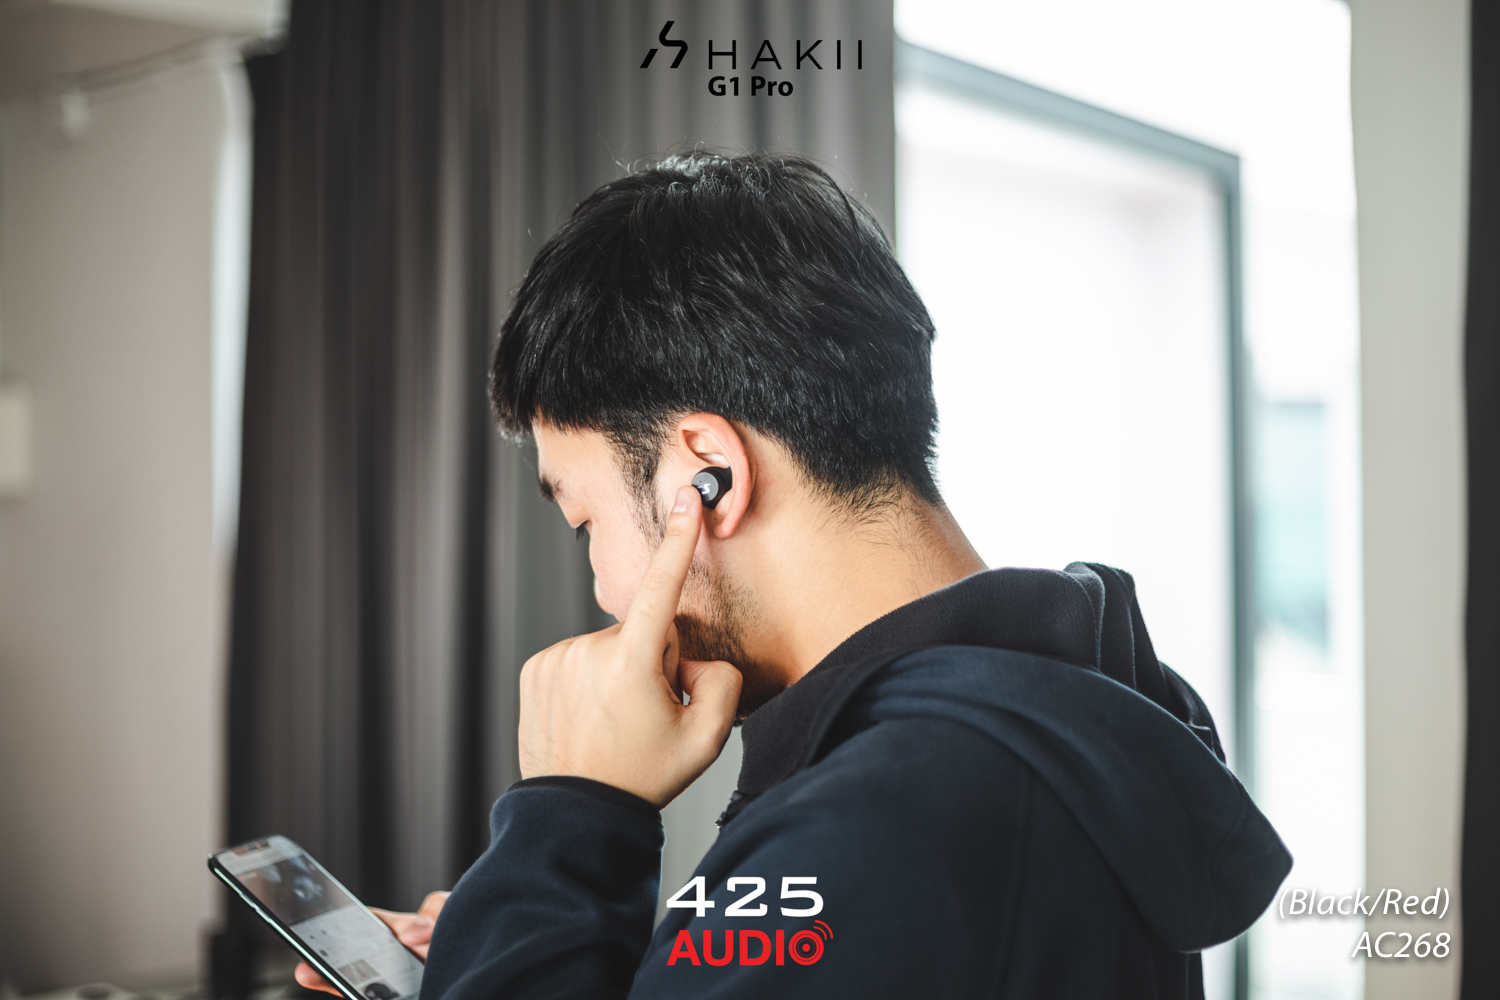 HAKII G1 PRO,G1 Pro,best headphones 2019,True wireless,havit g1 pro,หูฟังไร้สาย,หูฟังบลูทูธ,หูฟังใส่วิ่ง